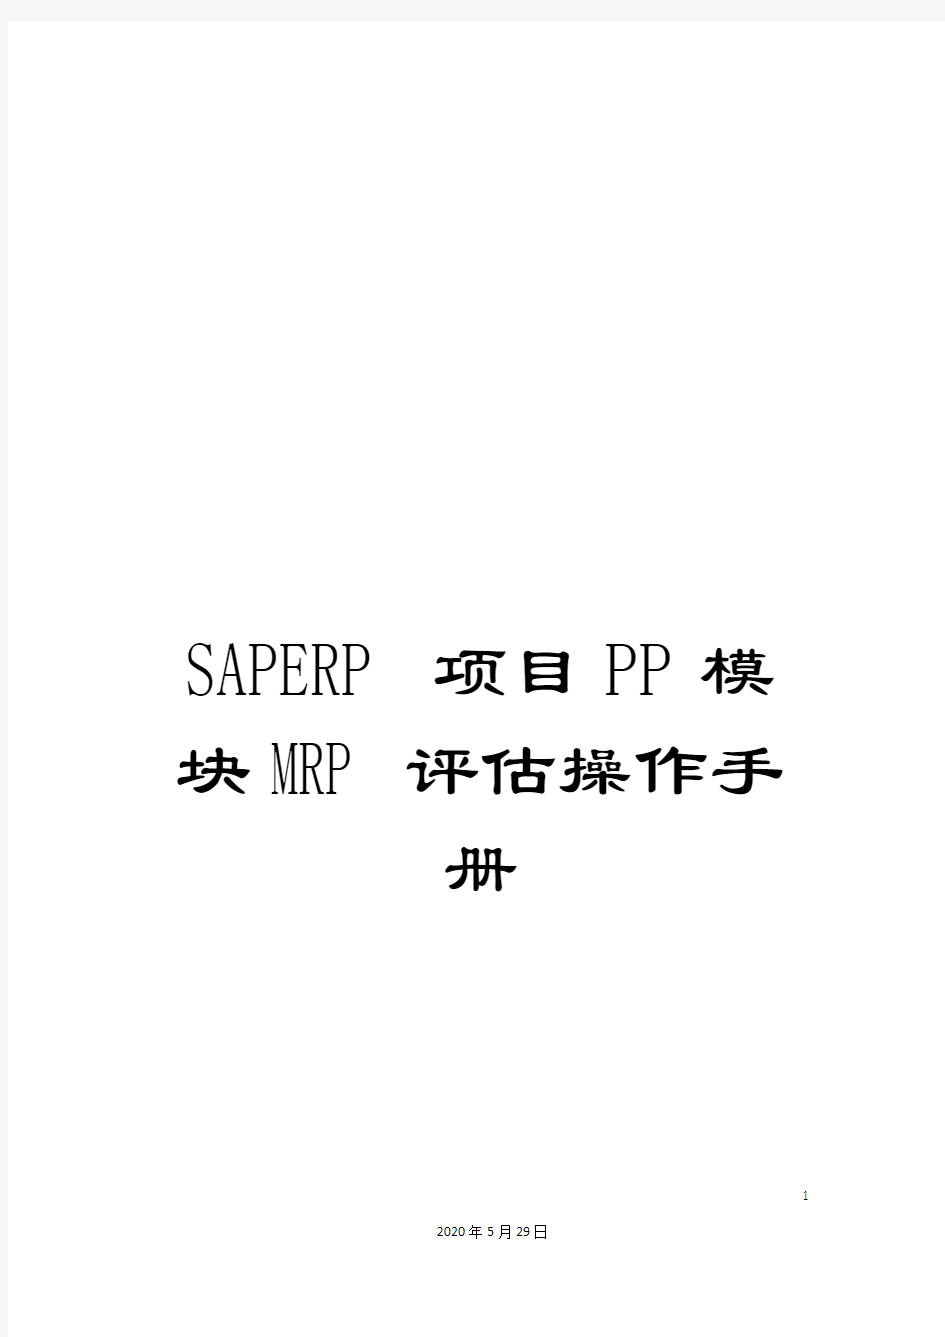 SAPERP项目PP模块MRP评估操作手册